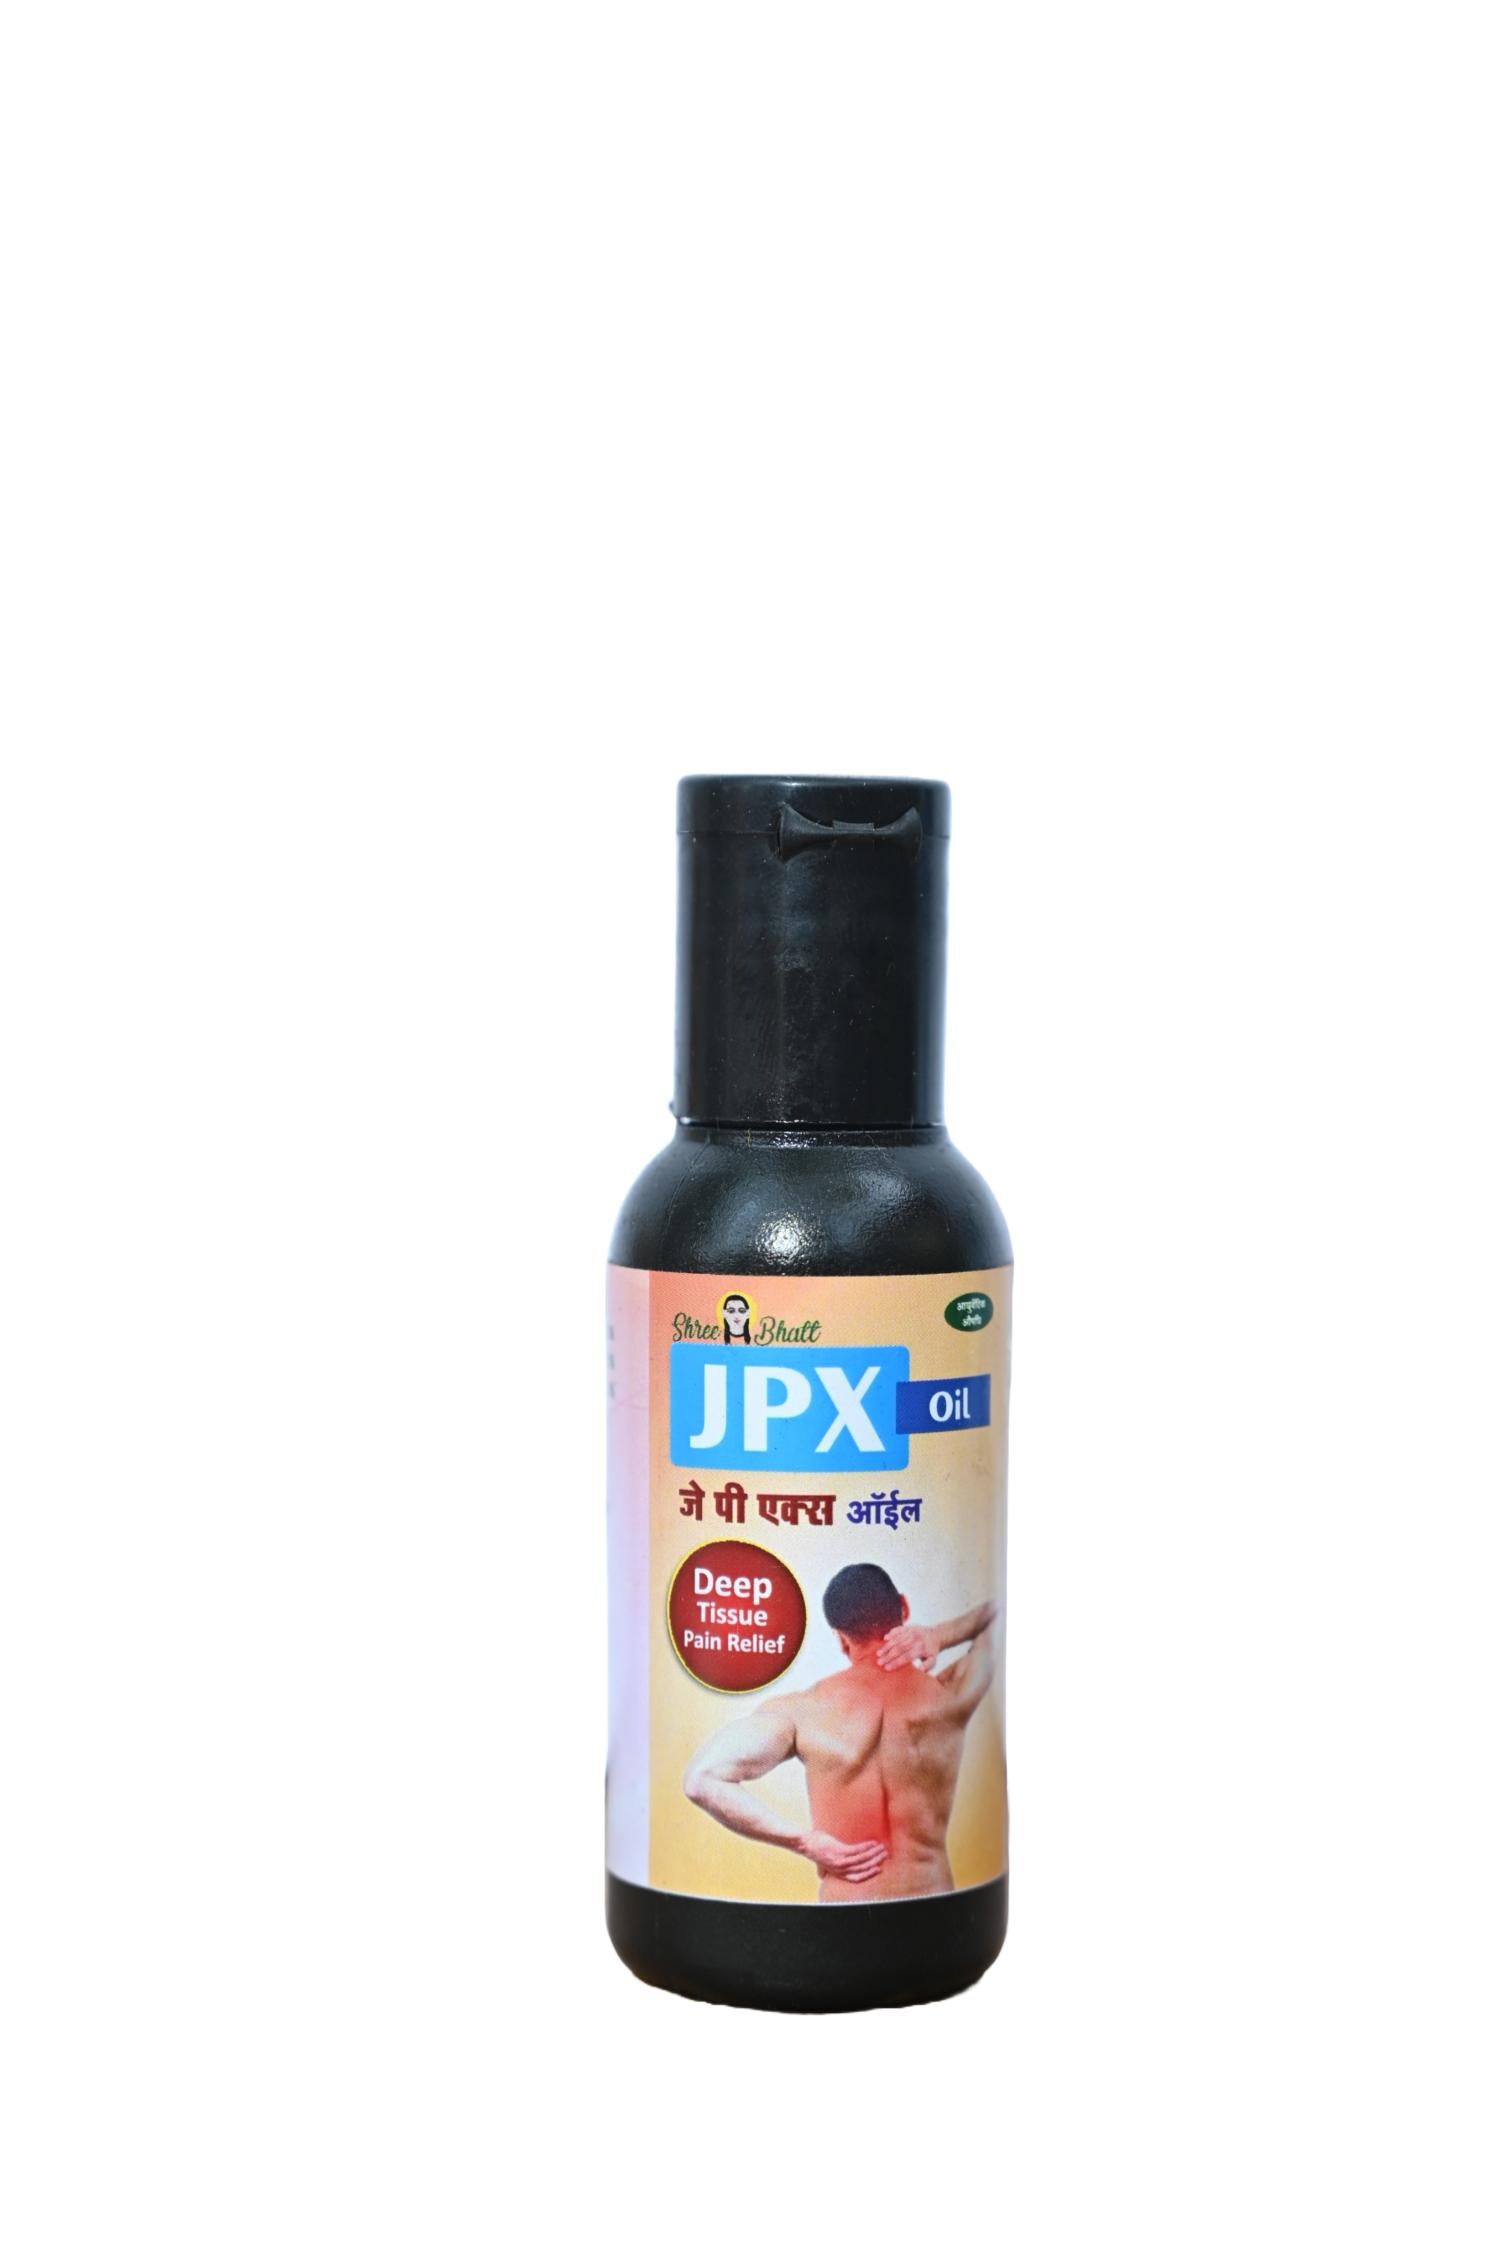 Shreebhatt JPXtreme Oil